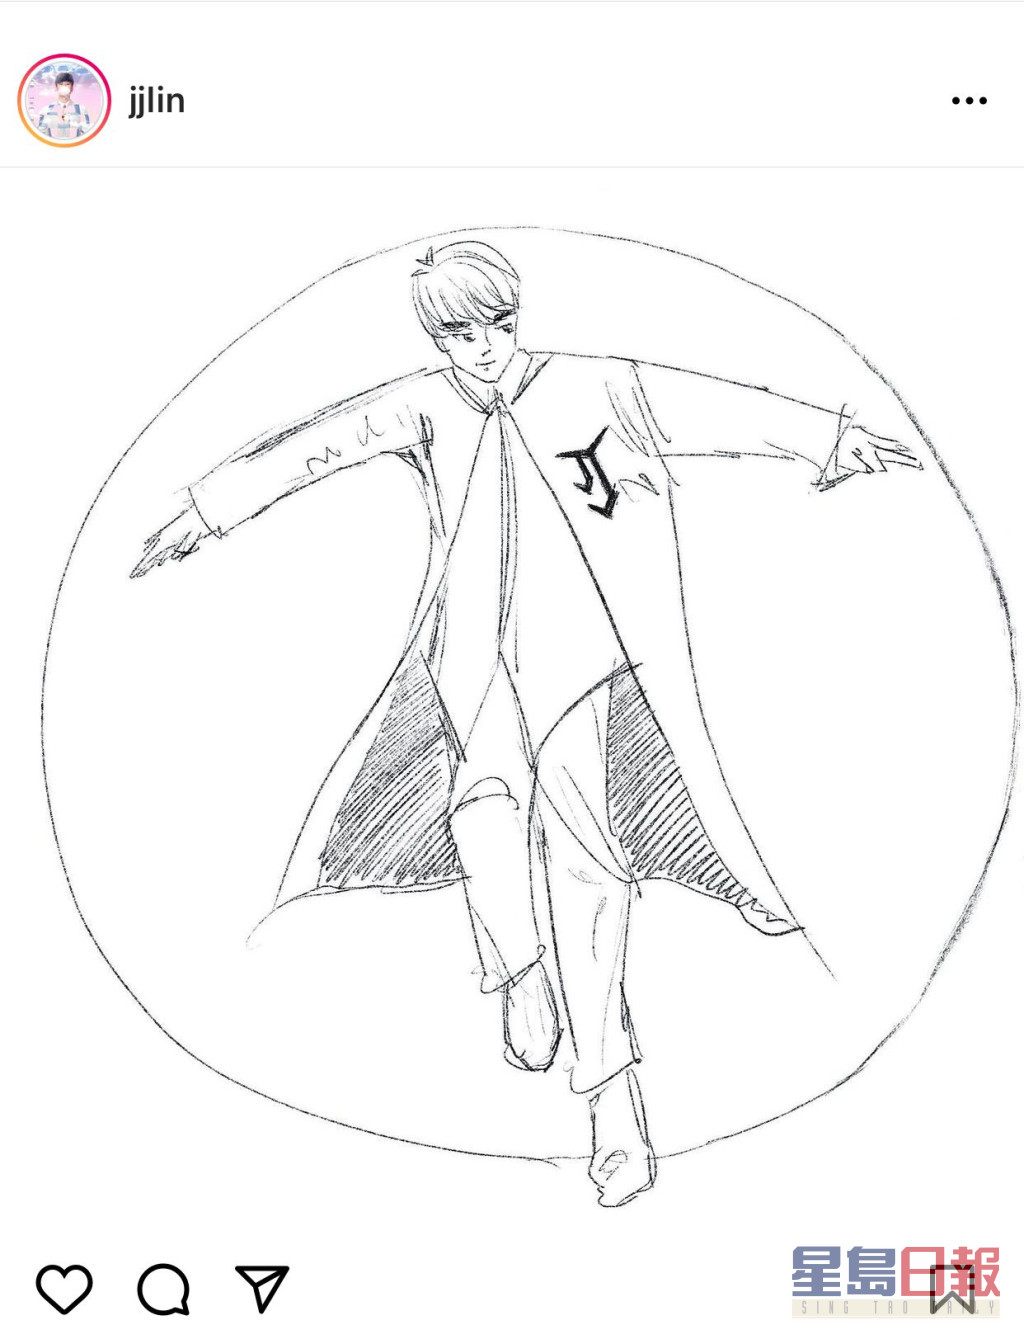 林俊傑的素描畫，胸前有代表他的JJ標誌。